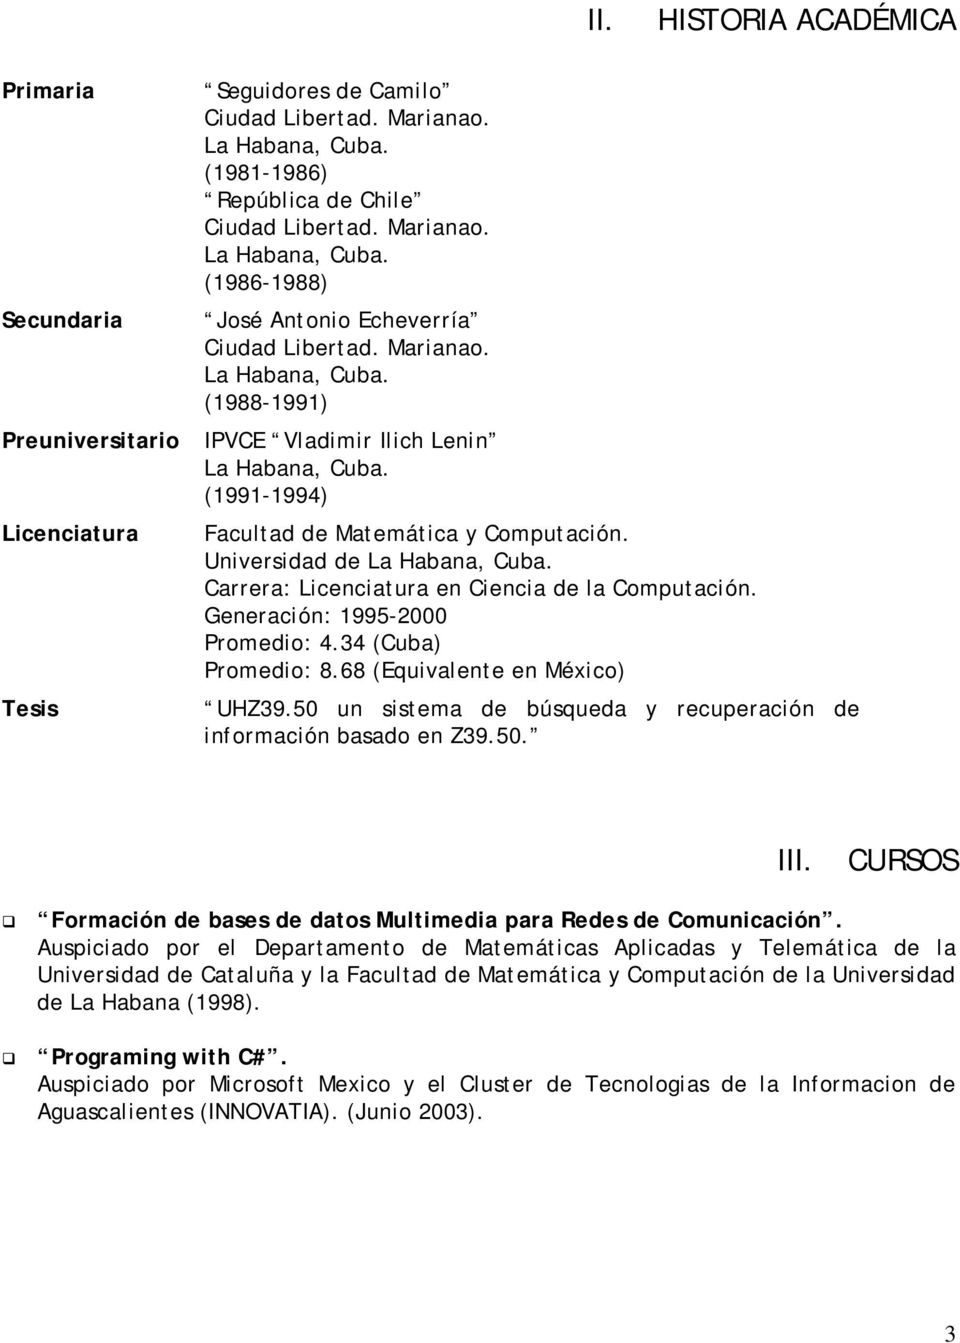 Carrera: Licenciatura en Ciencia de la Cmputación. Generación: 1995-2000 Prmedi: 4.34 (Cuba) Prmedi: 8.68 (Equivalente en Méxic) UHZ39.